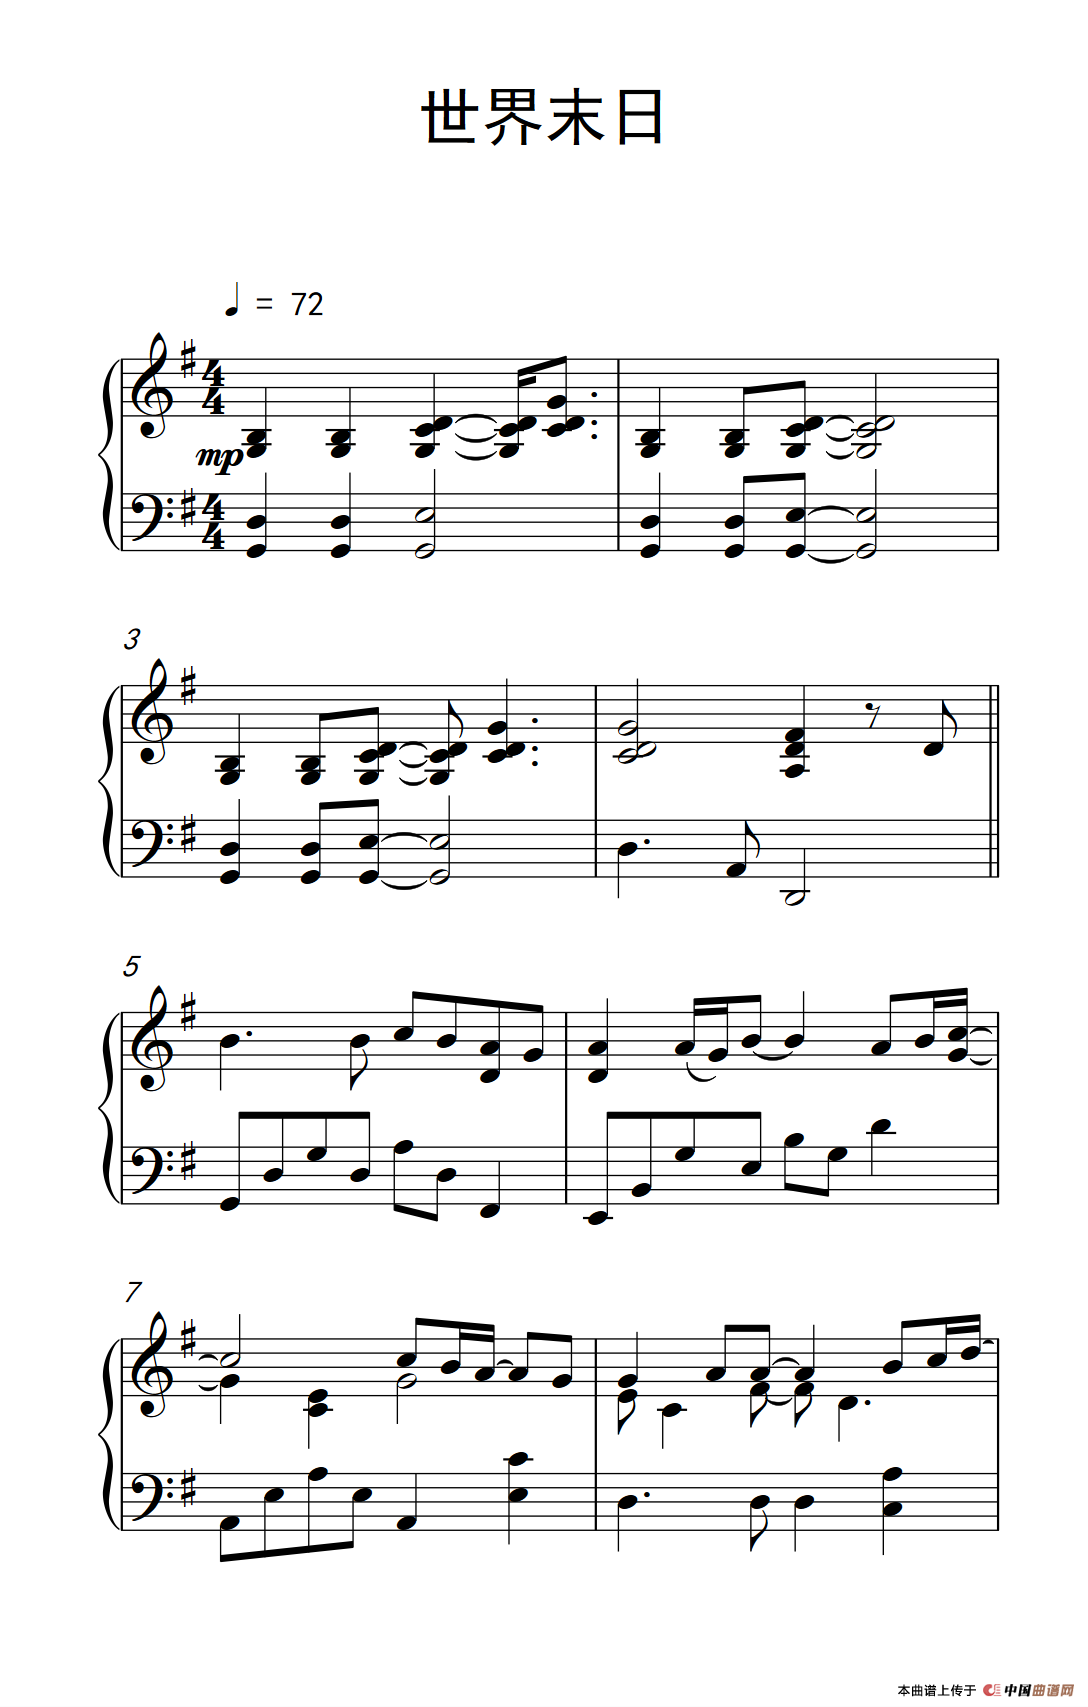 《世界末日》简单钢琴谱 - 周杰伦左手右手慢速版 - 简易入门版 - 钢琴简谱